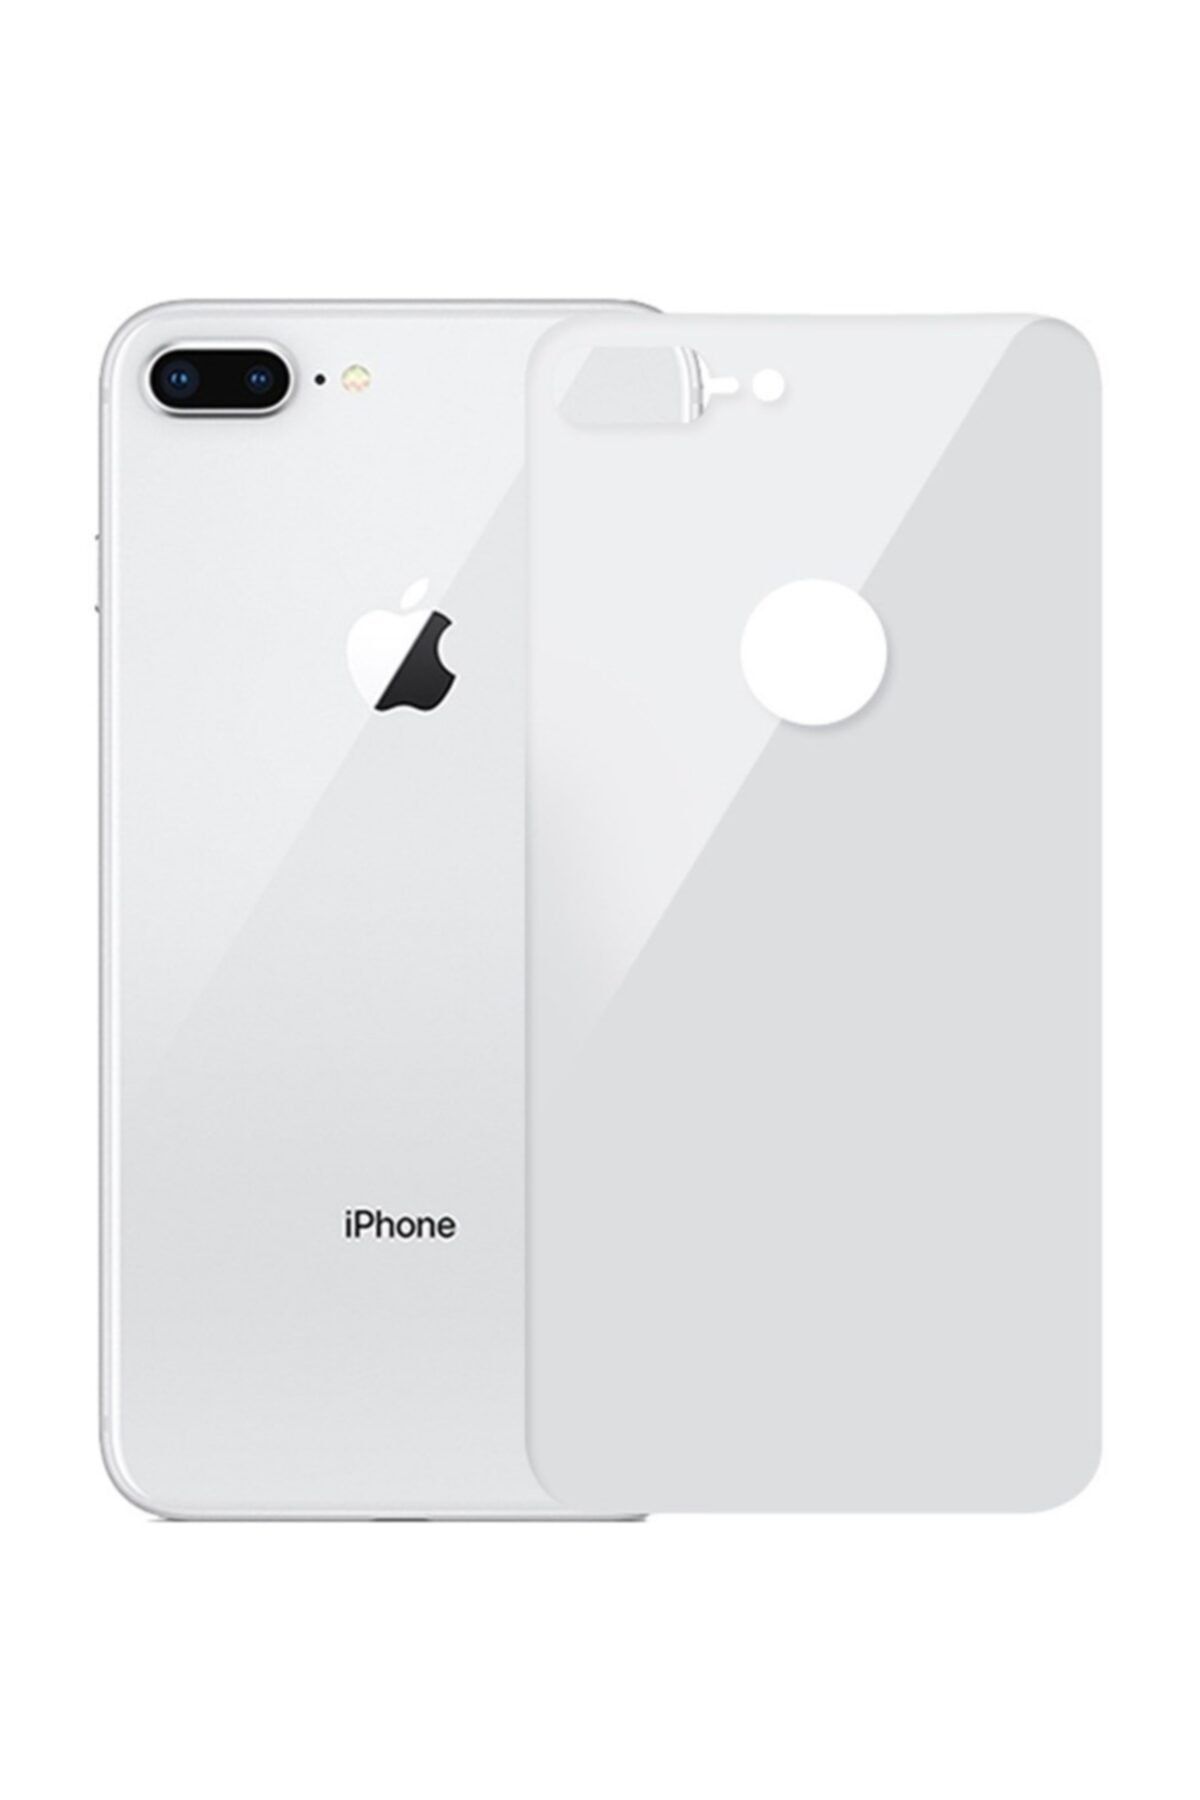 Go Aksesuar Apple Iphone 7 Plus 8 Plus Uyumlu Arka Tam Kaplayan Temperli Cam Koruyucu Beyaz